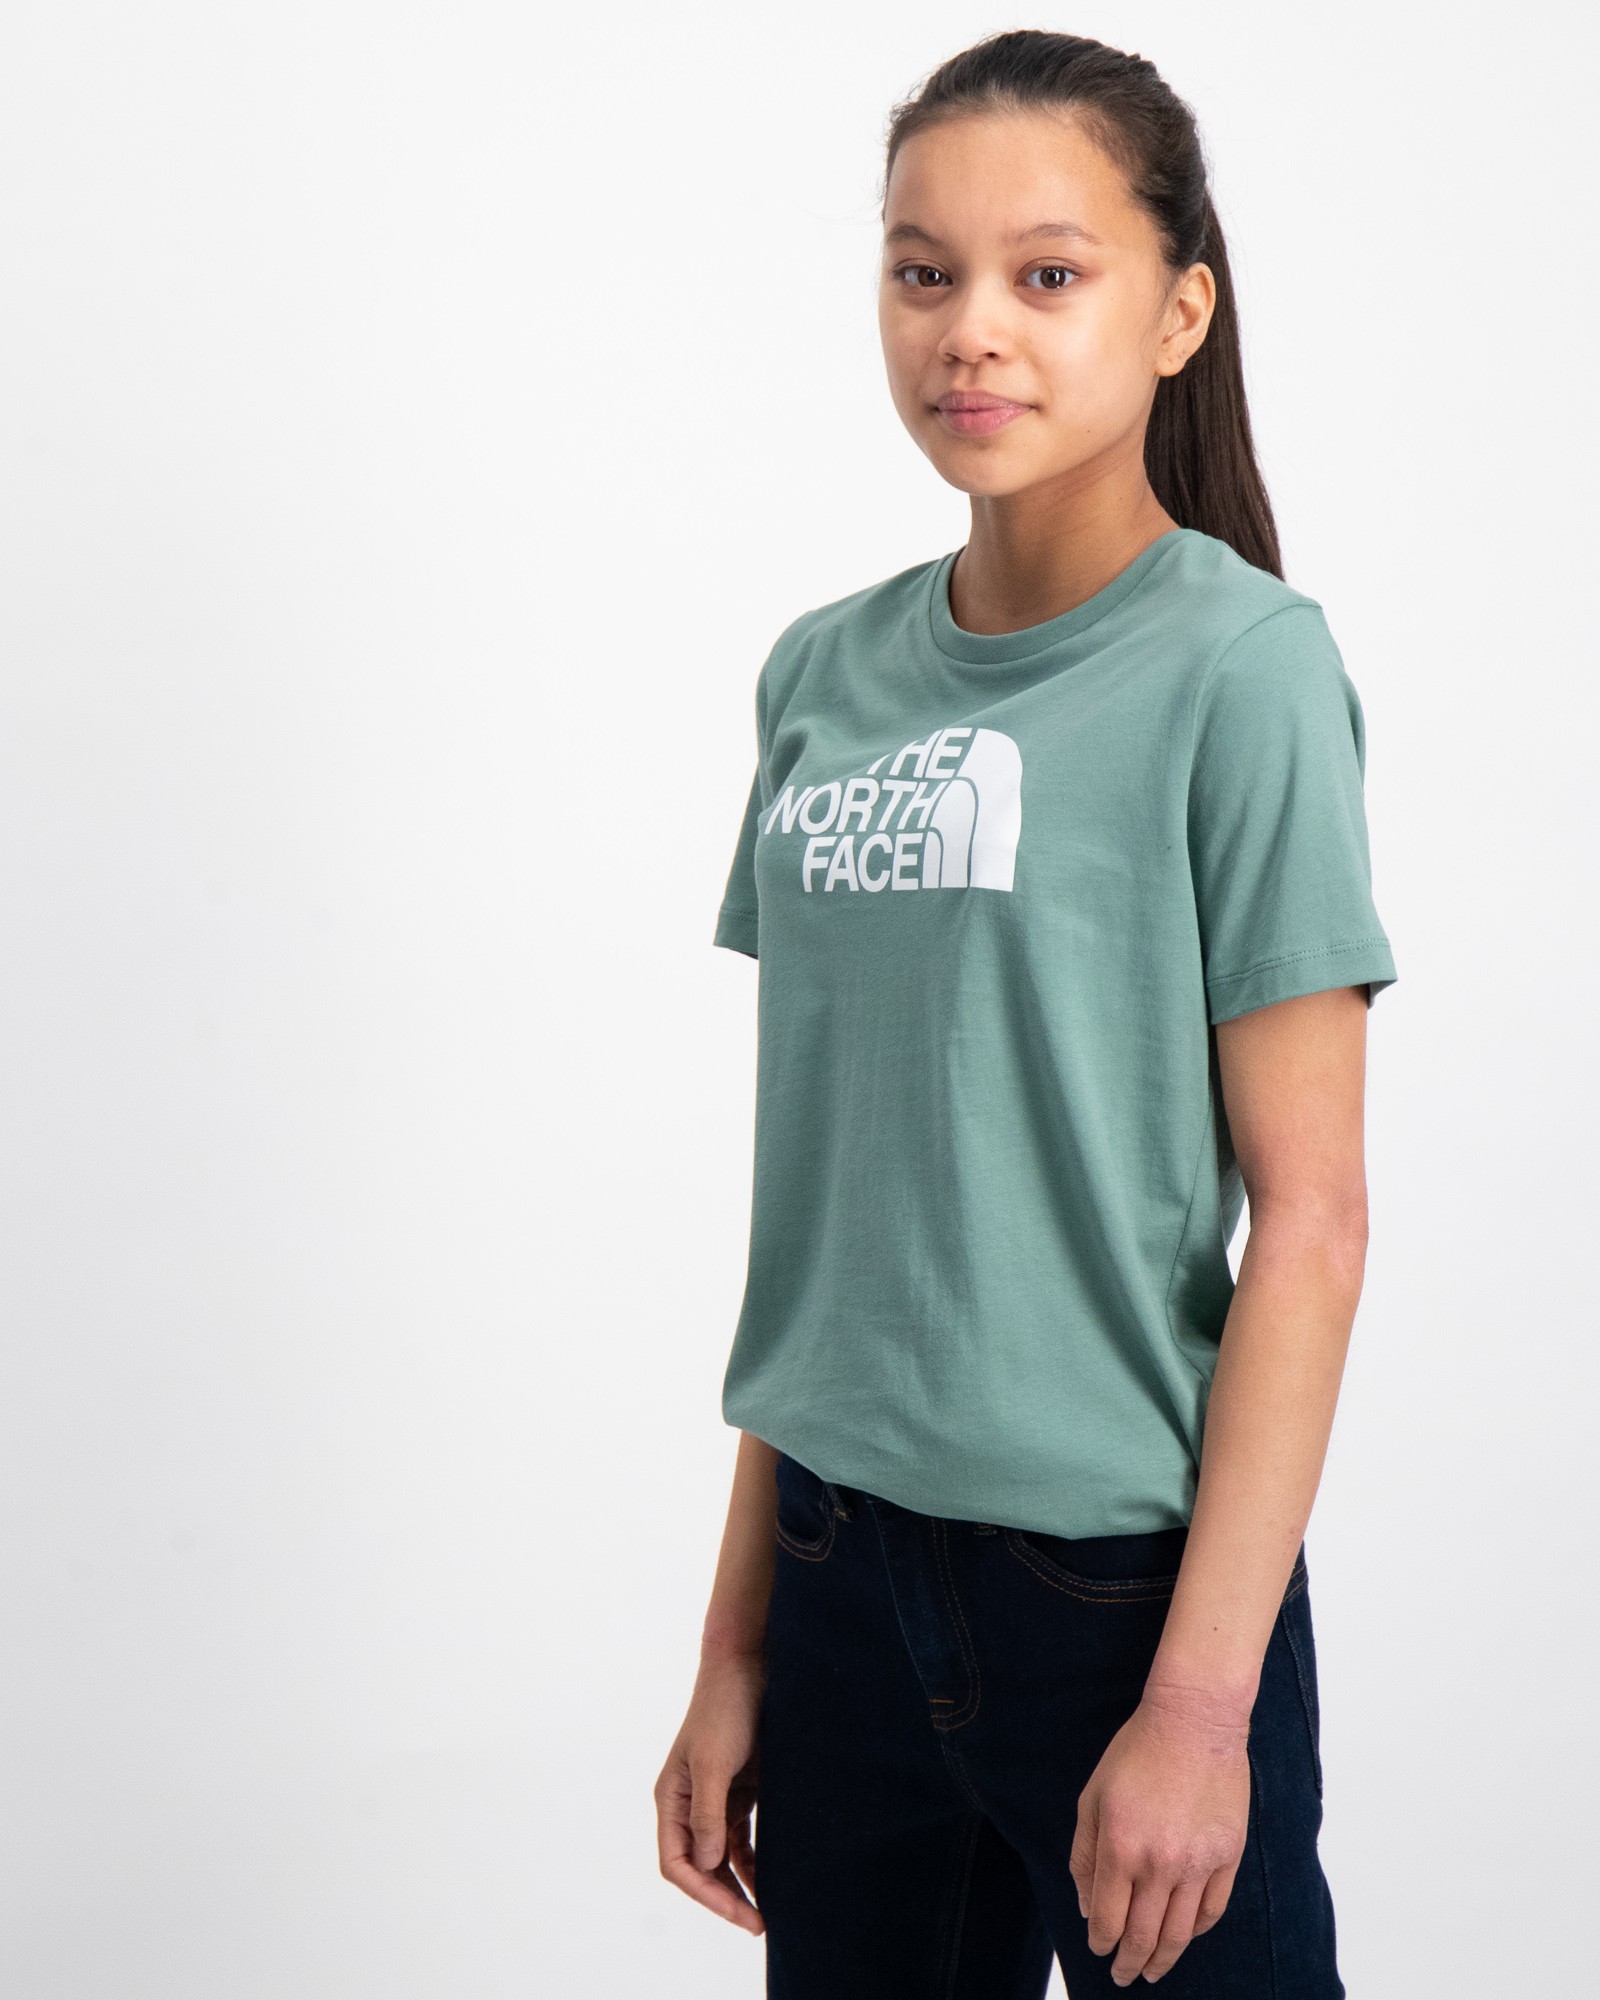 The North Face T-Shirts für Kinder Kids Jugendliche Store | und Brand